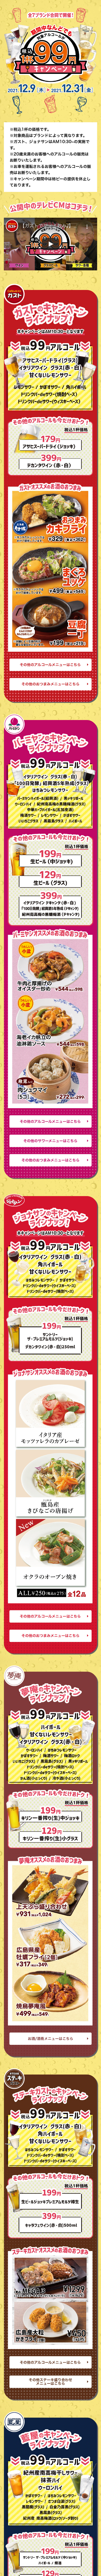 アルコール税込１杯９９円キャンペーン_sp_1